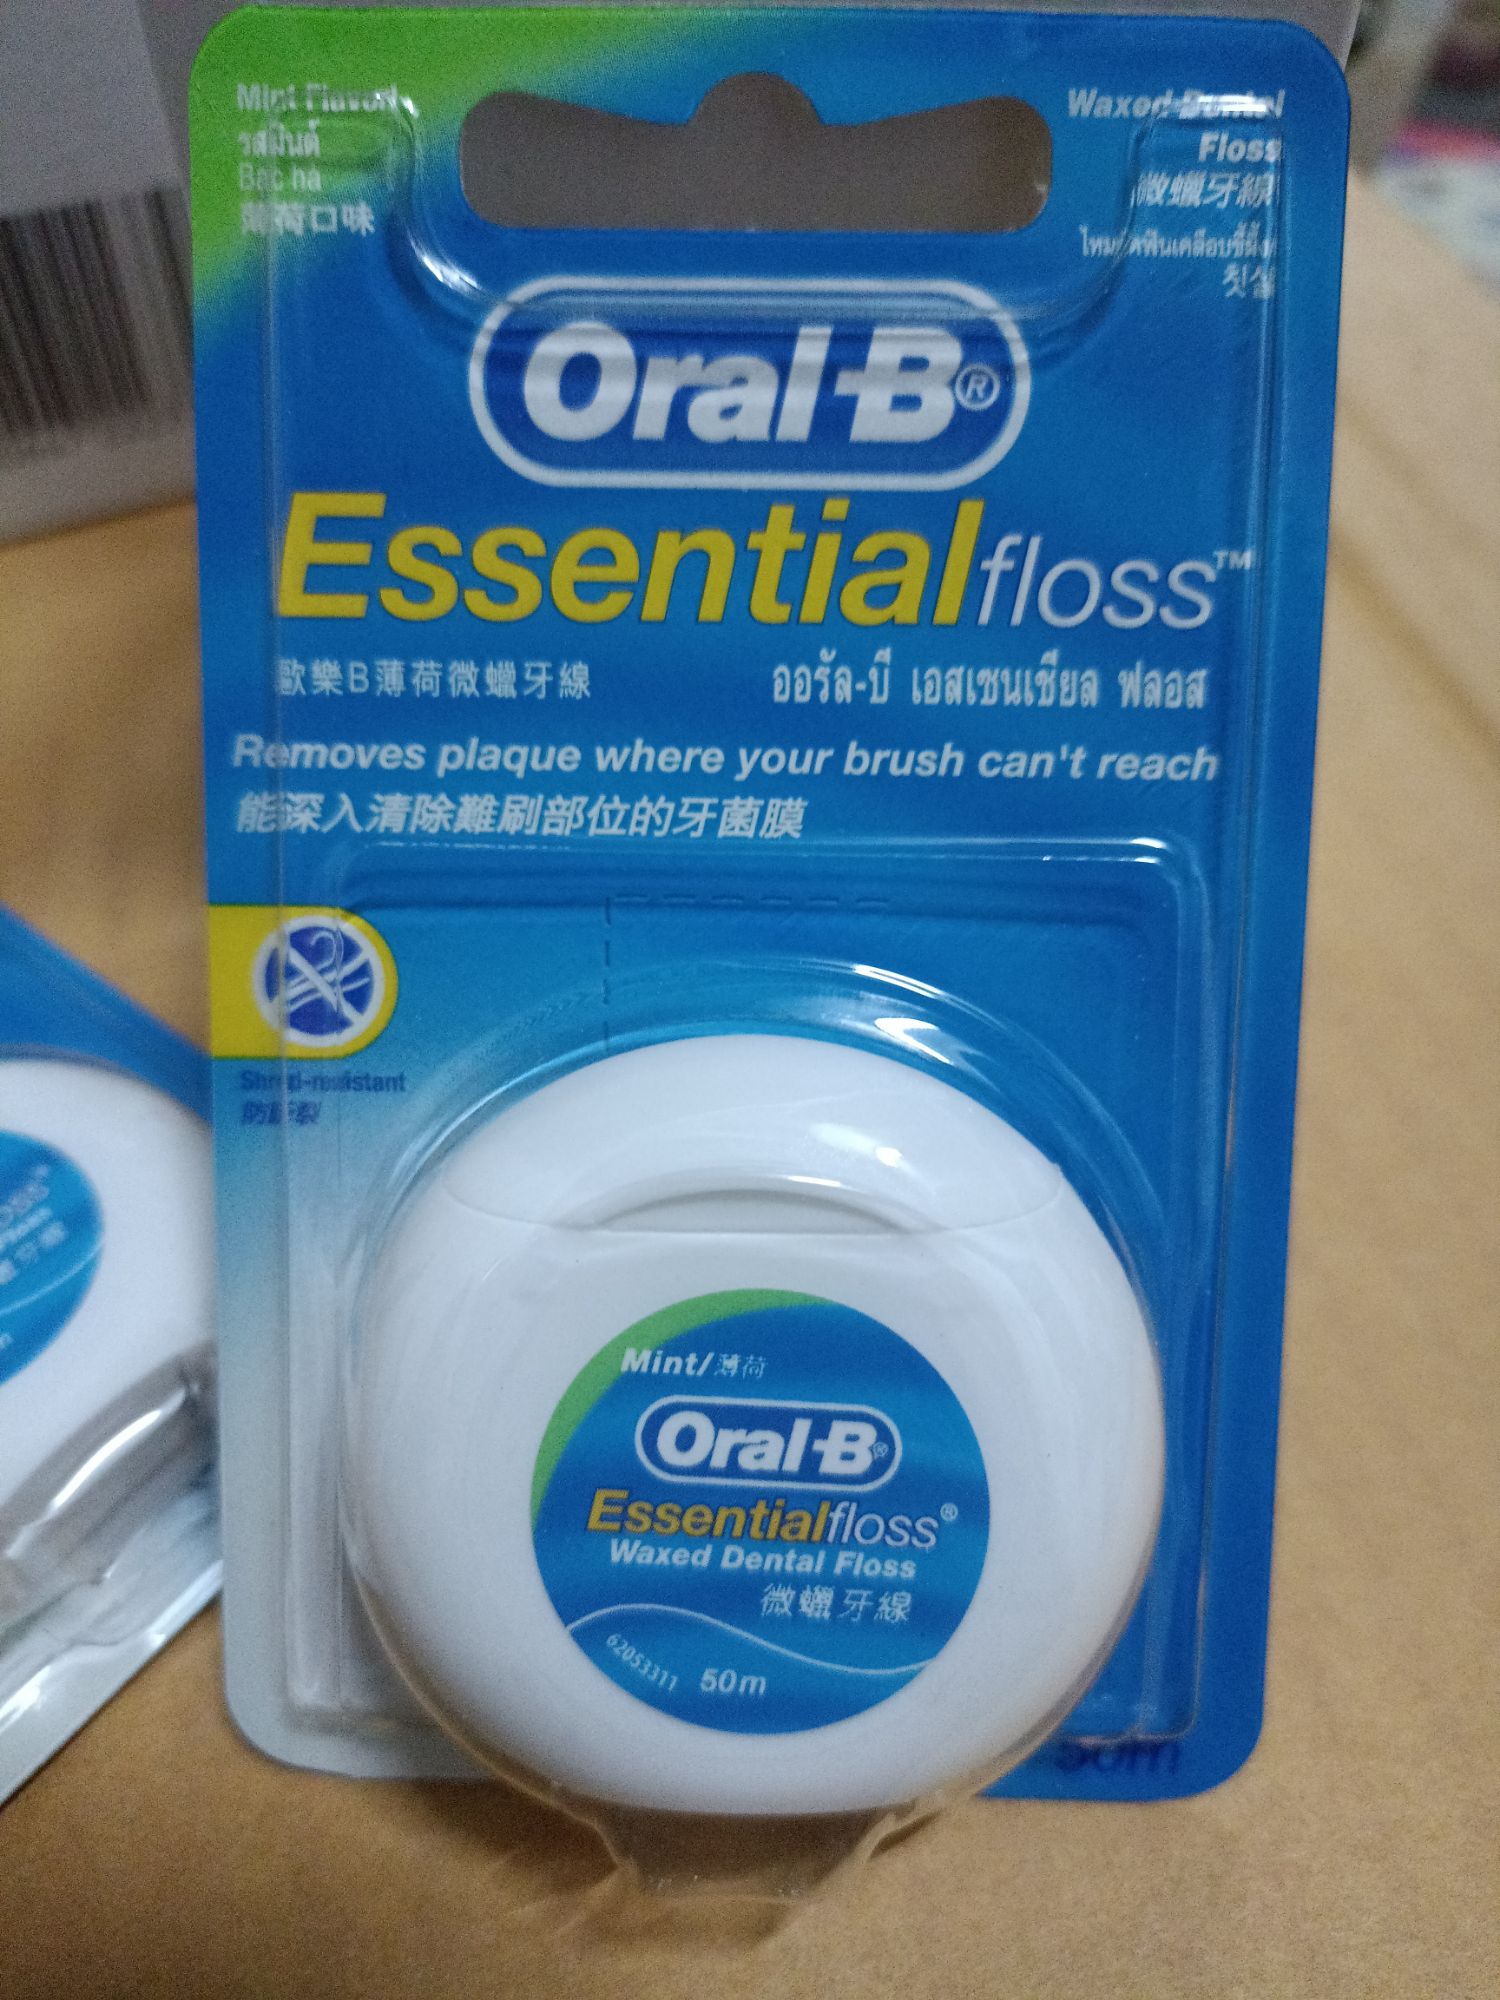 ไหมขัดฟันOral-B Essential floss 50 m